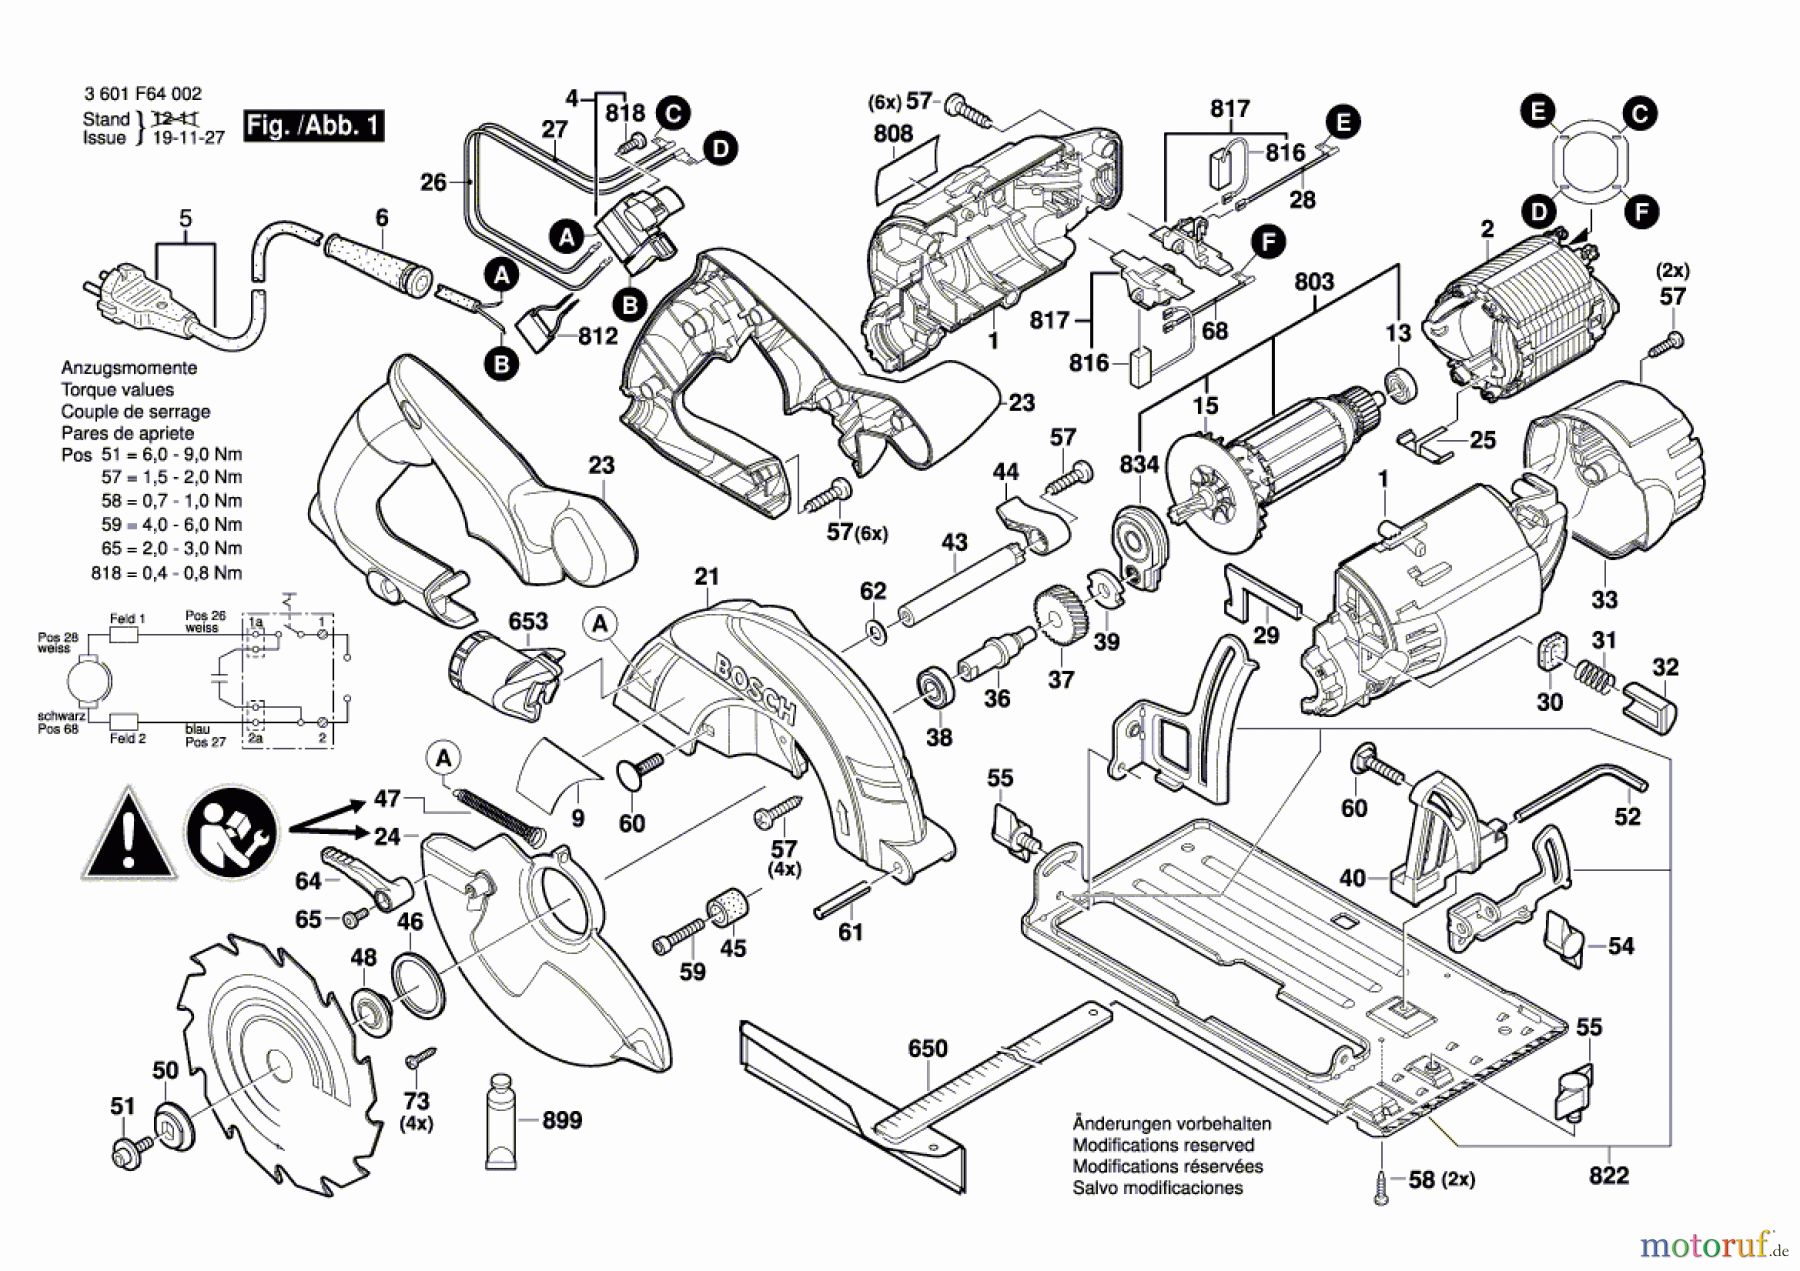  Bosch Werkzeug Handkreissäge GKS 55 Seite 1